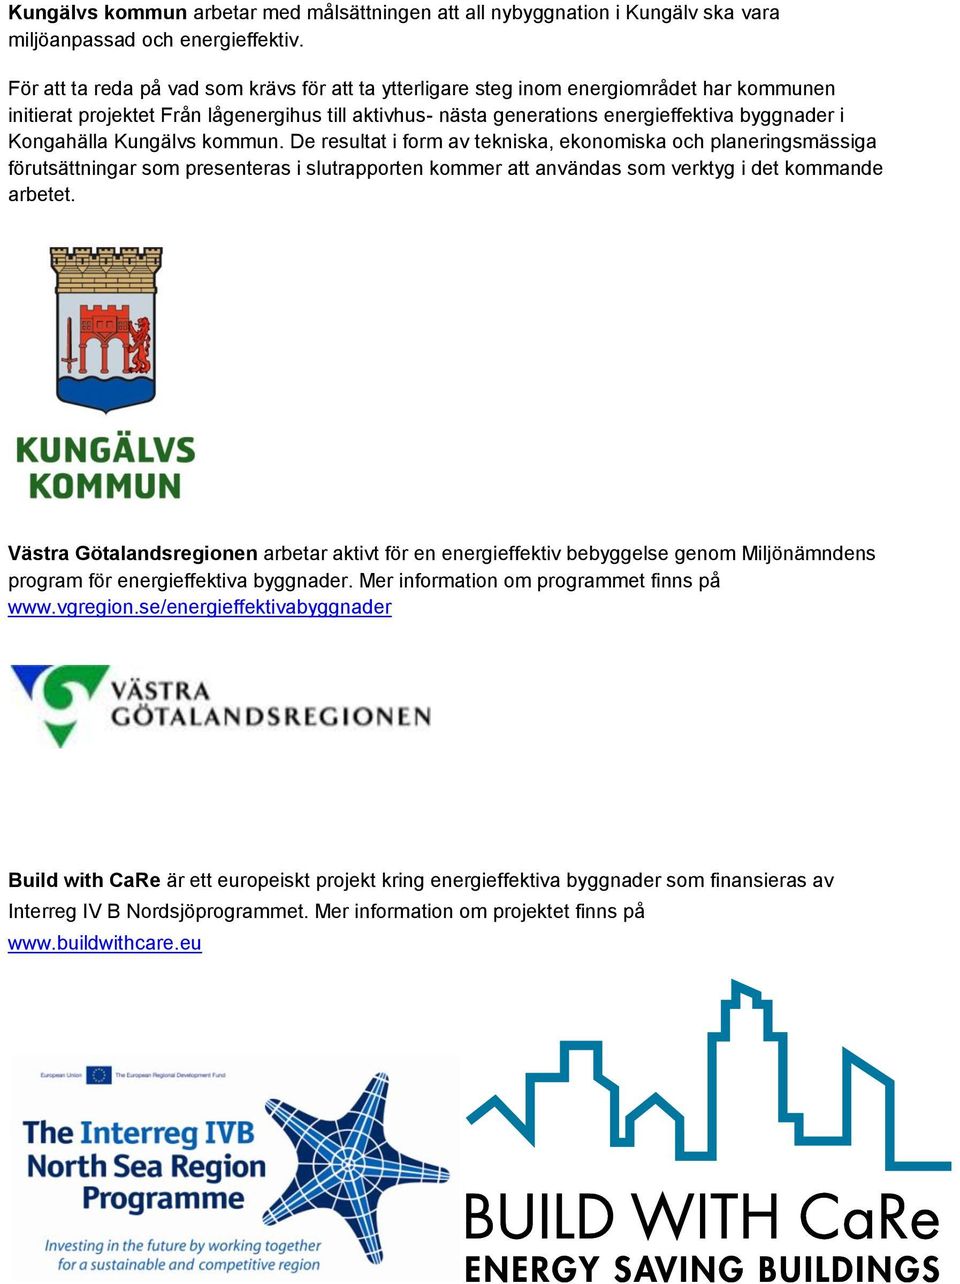 Kongahälla Kungälvs kommun. De resultat i form av tekniska, ekonomiska och planeringsmässiga förutsättningar som presenteras i slutrapporten kommer att användas som verktyg i det kommande arbetet.